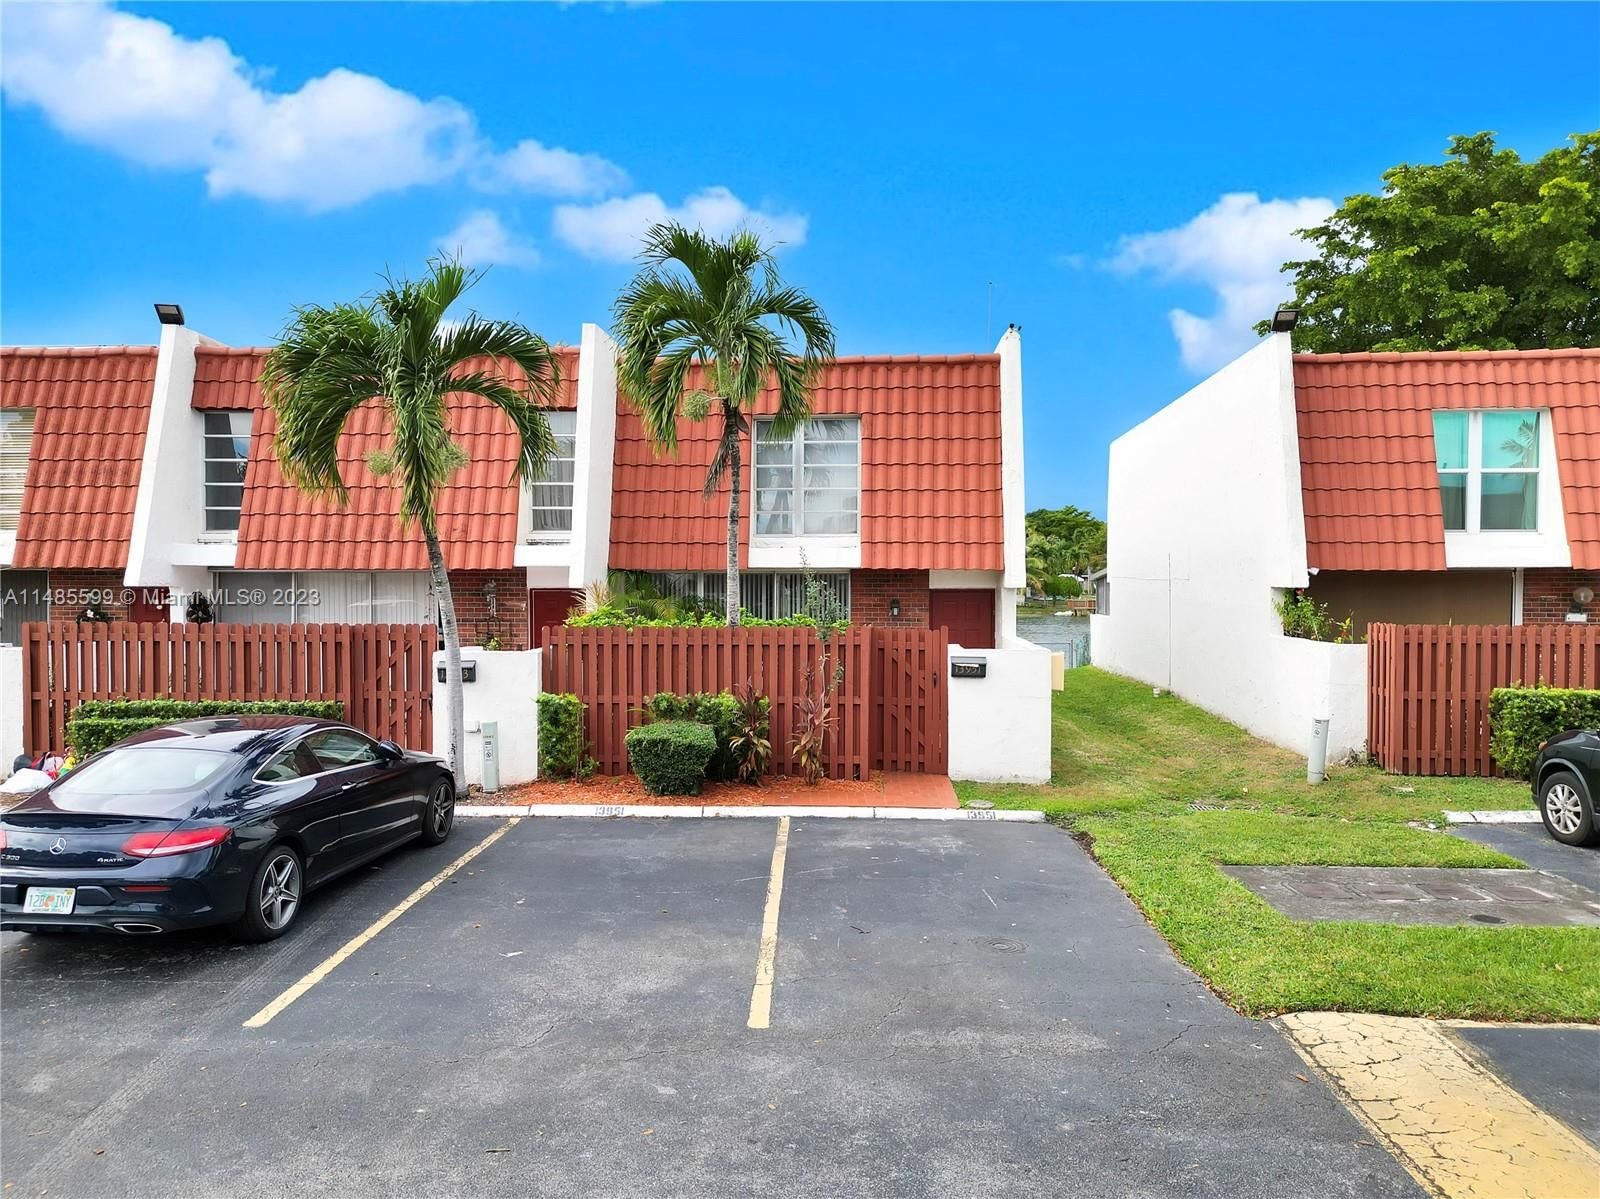 Real estate property located at 13951 84th St #1108, Miami-Dade County, LAKE LAURA CONDO NO 2, Miami, FL